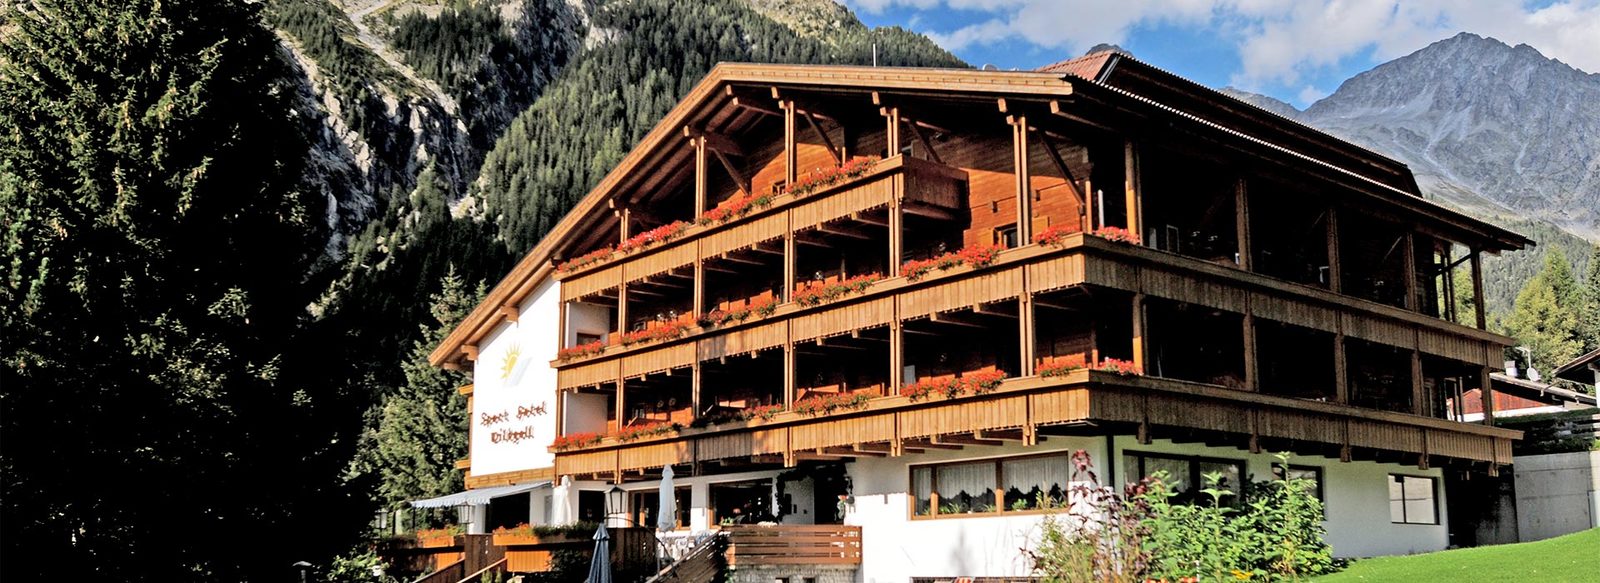 Ospitalità altoatesina in Val Pusteria